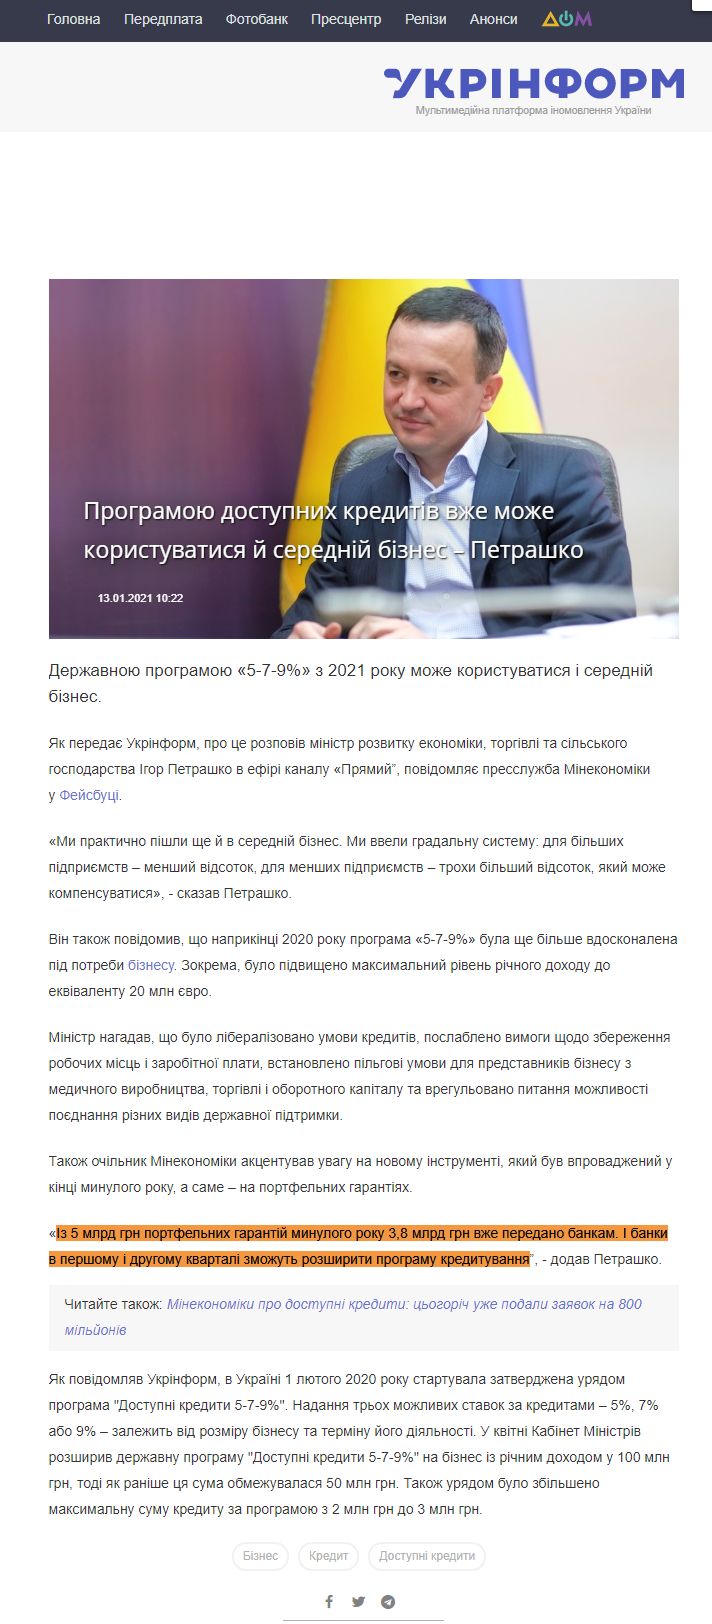 https://www.ukrinform.ua/rubric-economy/3169876-programou-dostupnih-kreditiv-vze-moze-koristuvatisa-j-serednij-biznes-petrasko.html